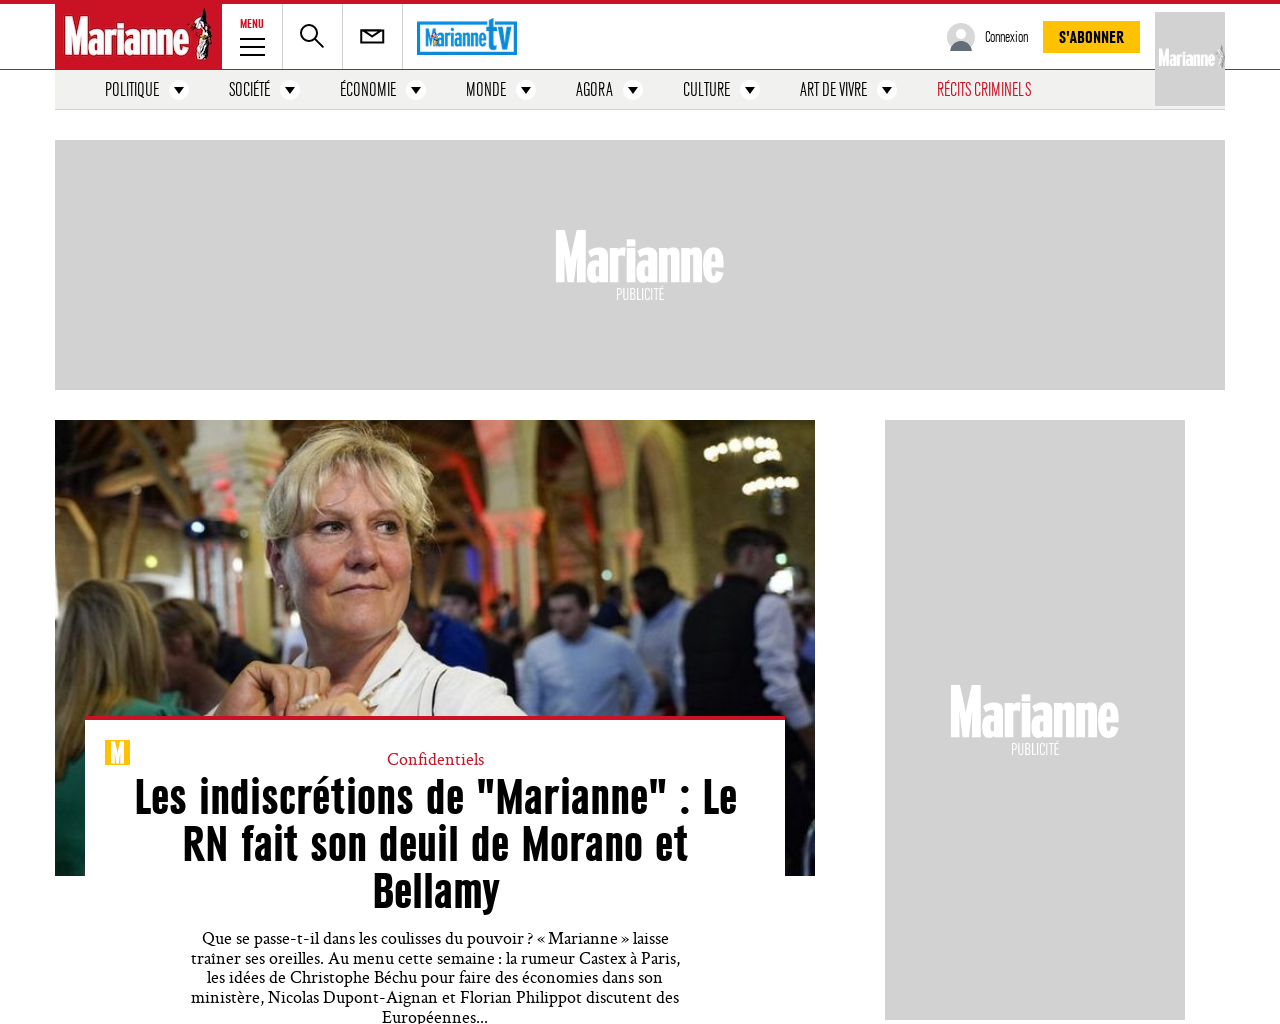 www.marianne.net